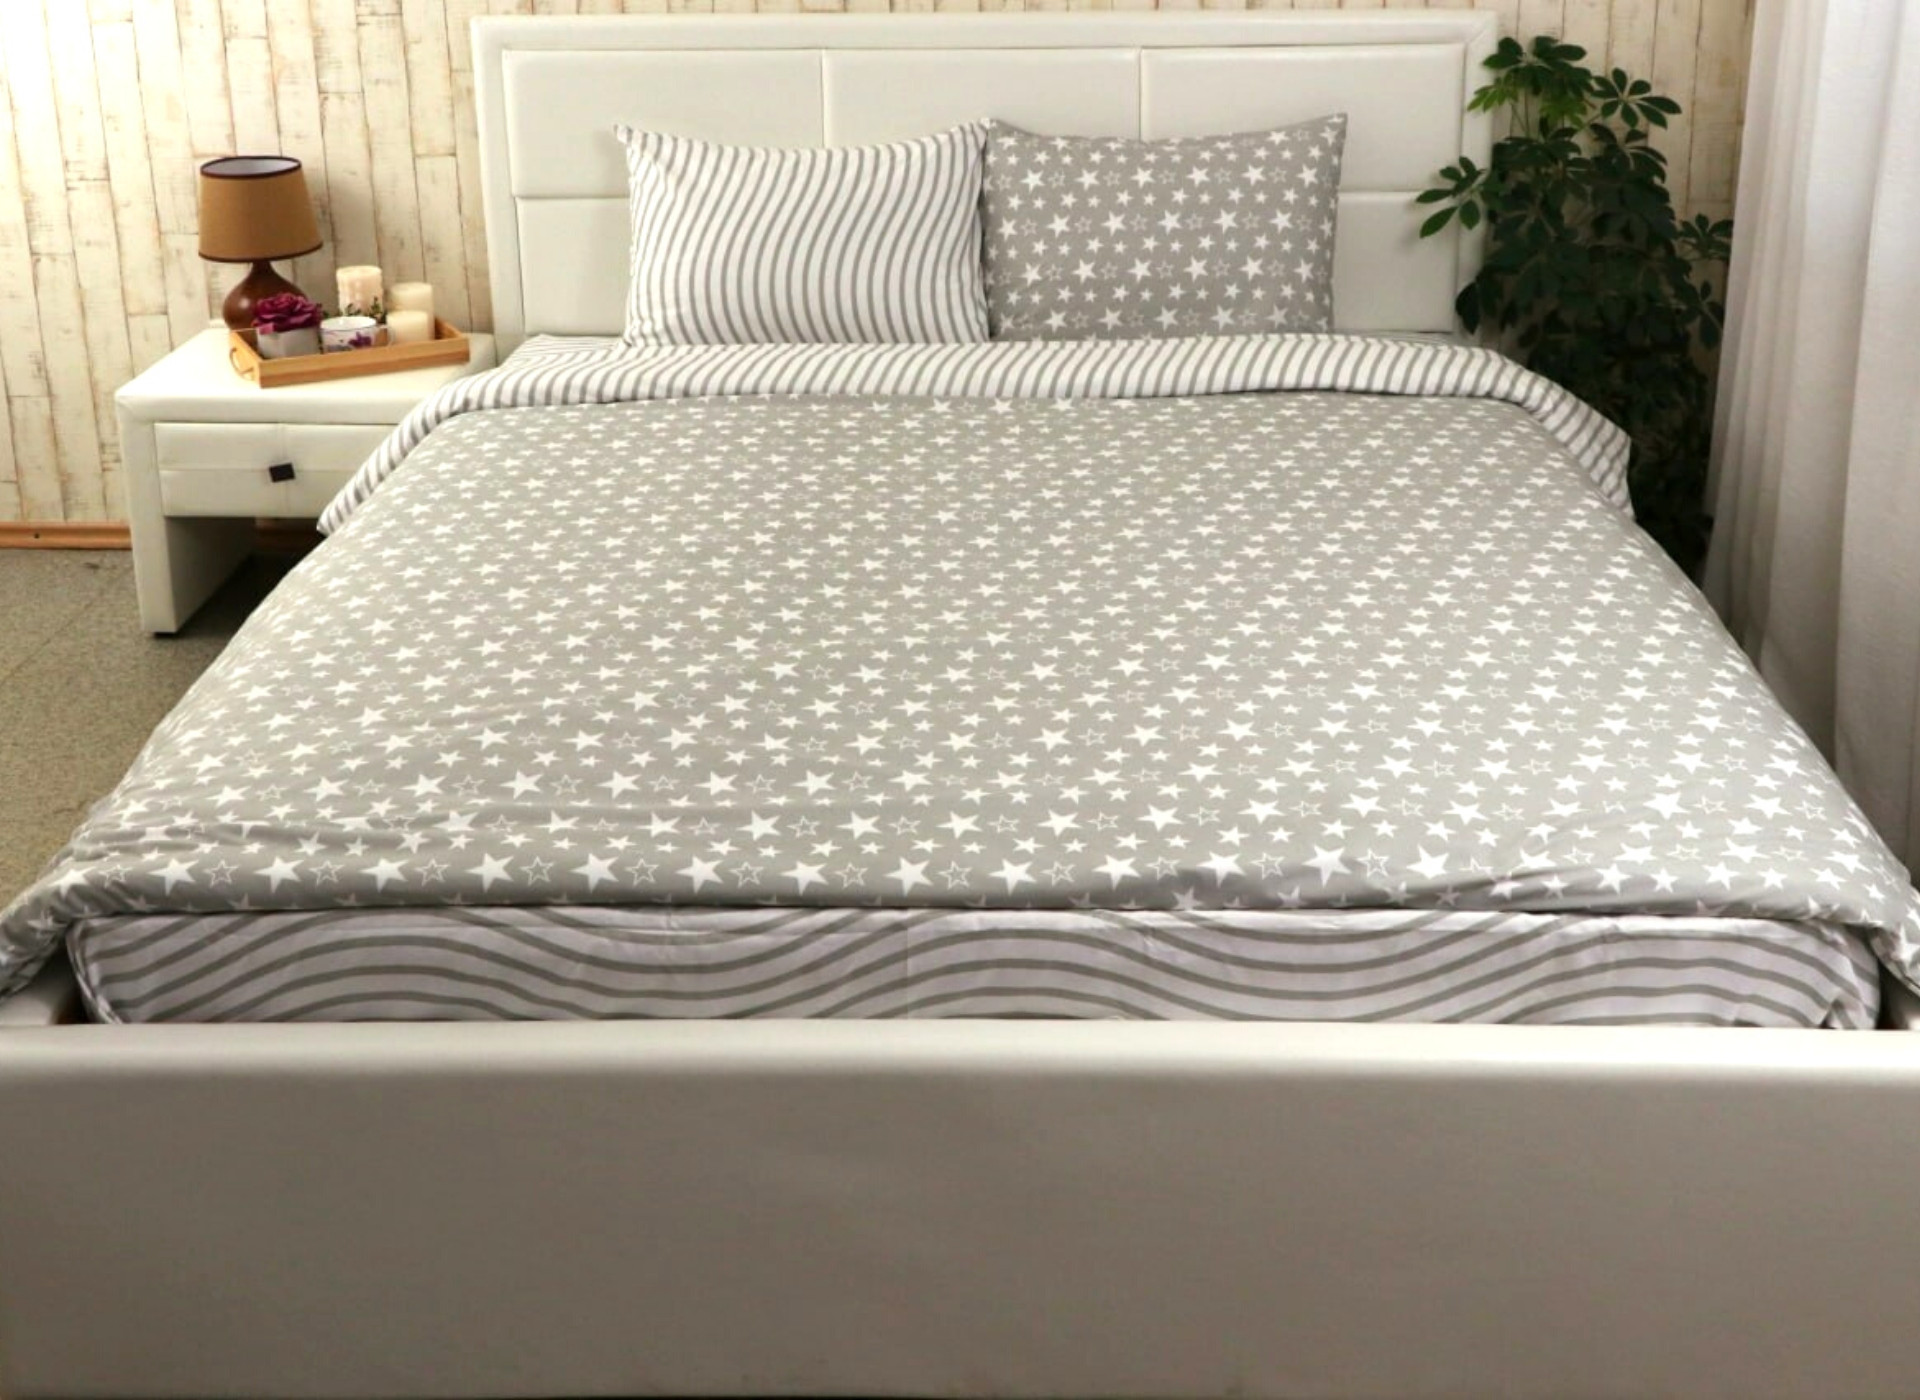 Комплект постельного белья из микрофибры Top Shop Руно 143х215 см Светло-серый с узором